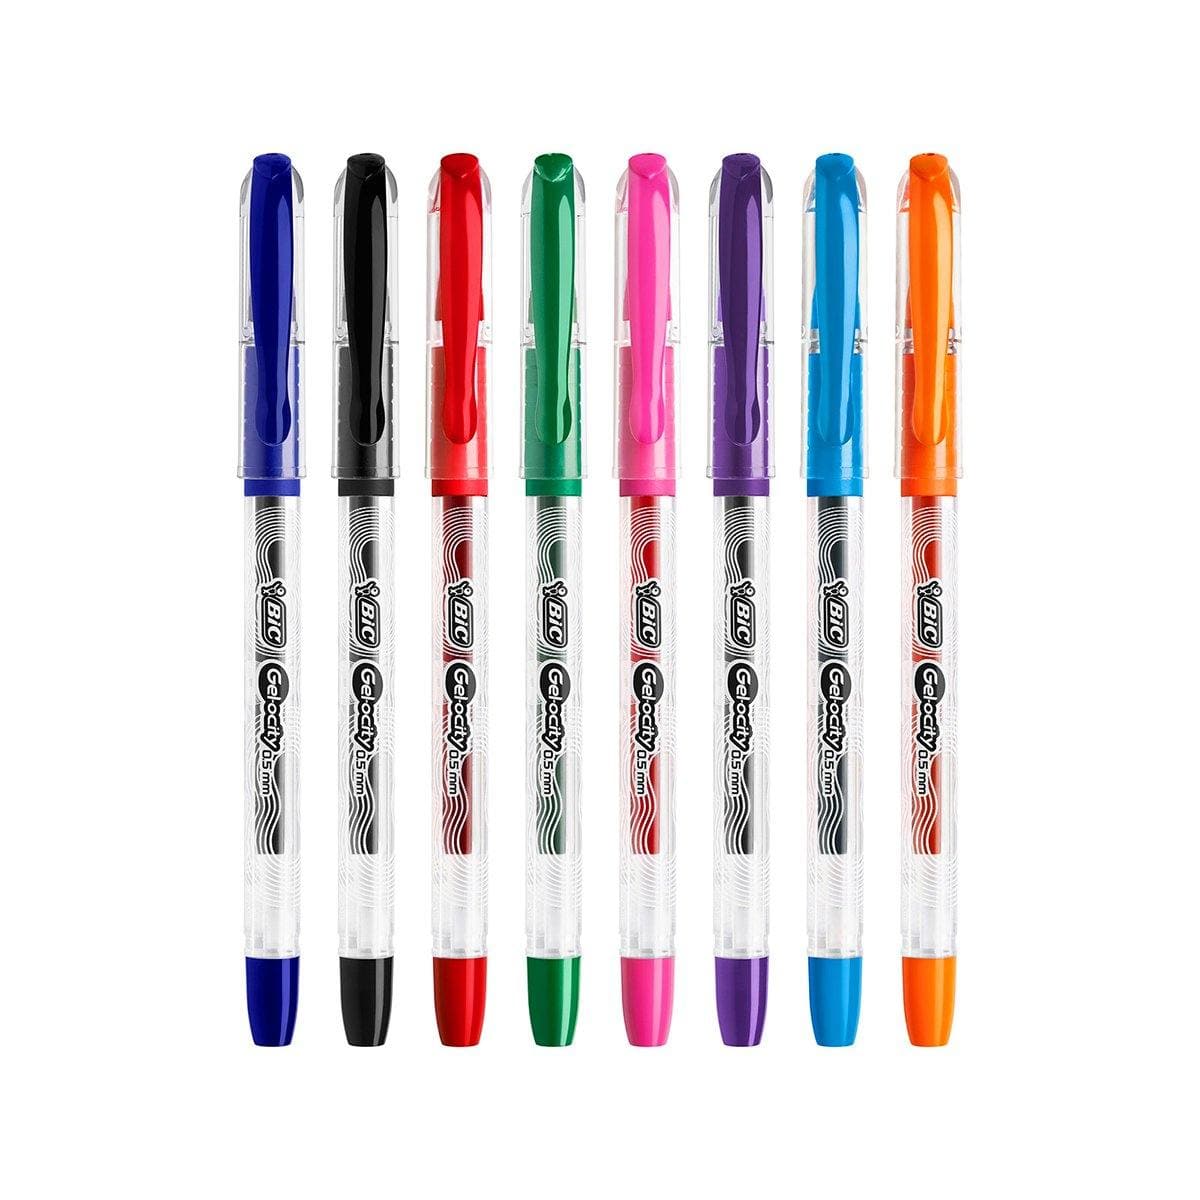 Ensemble de stylos à gel, 16 stylos colorés Maroc